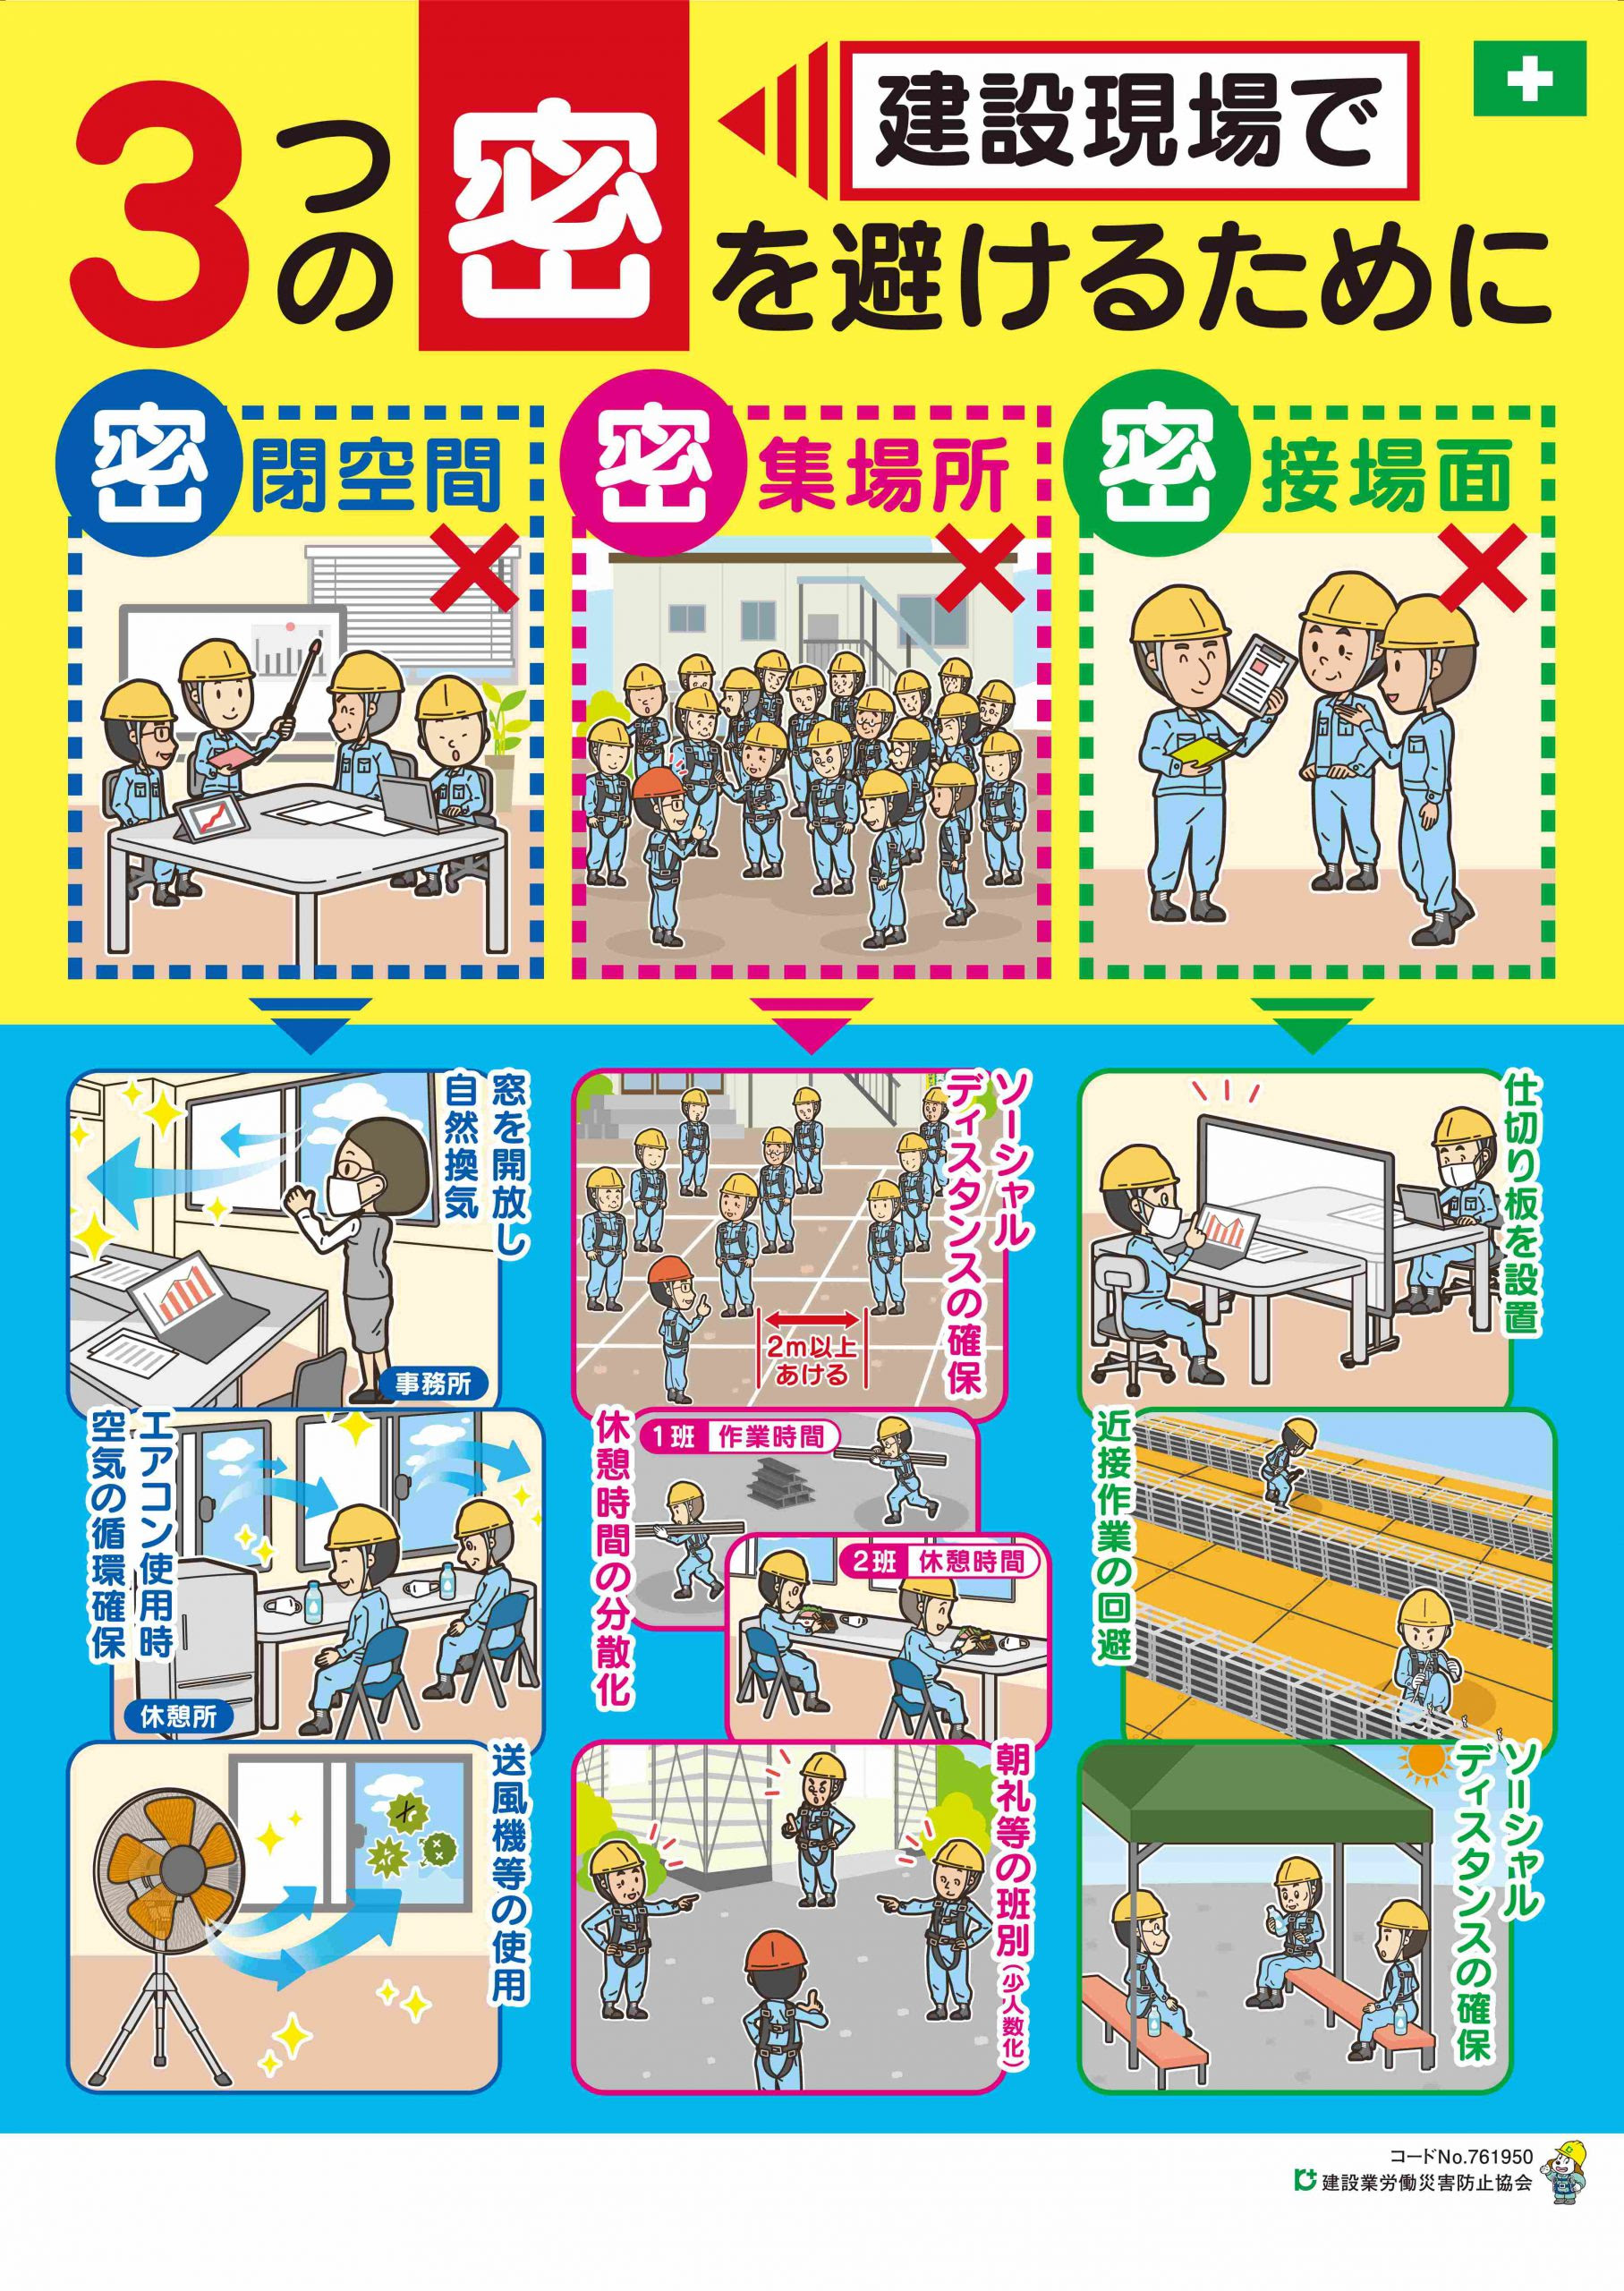 印刷可能 労働 安全 ポスター イラスト Ituirasuto